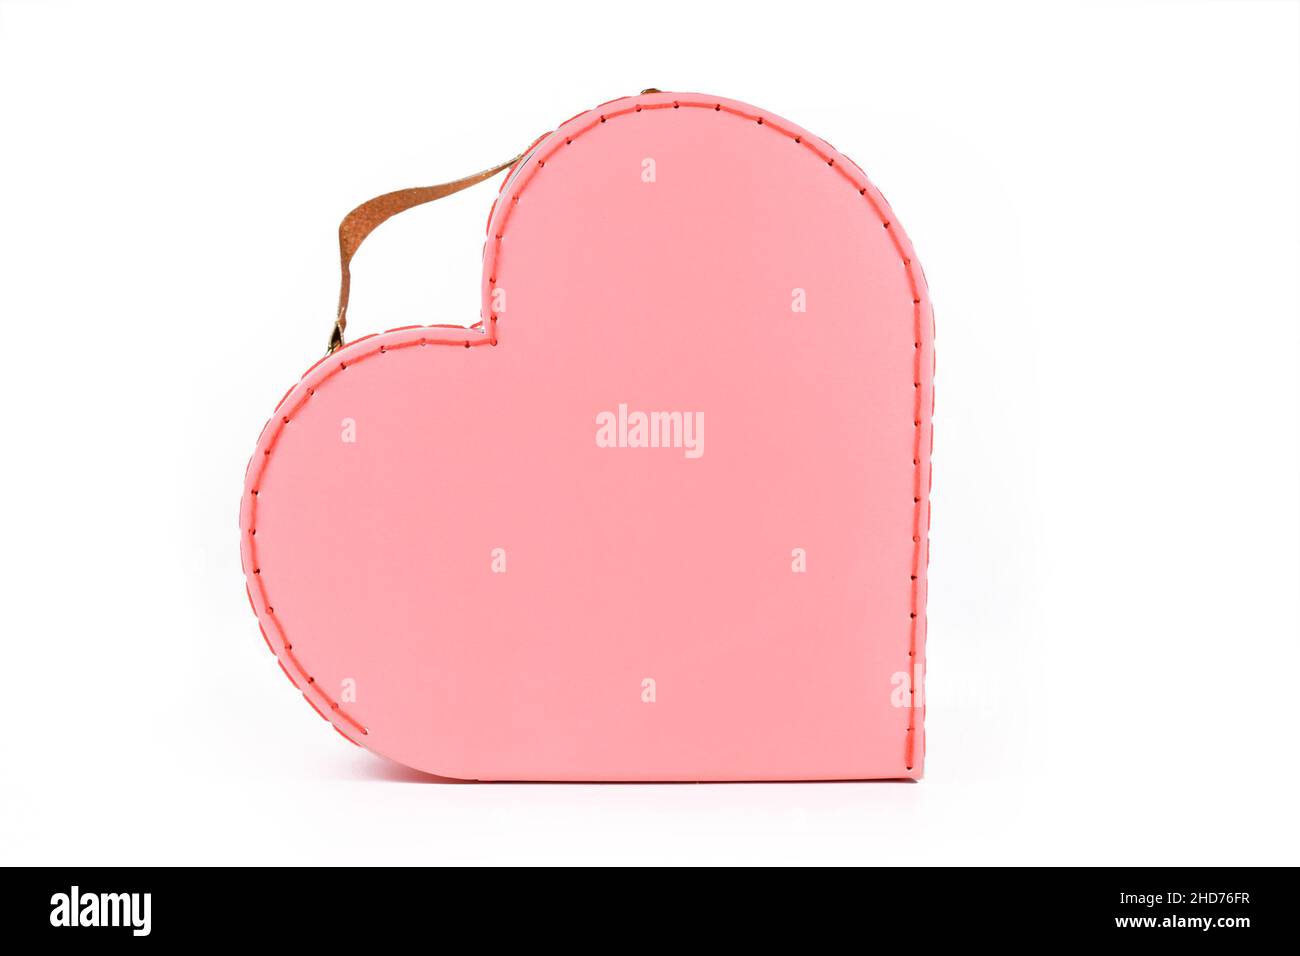 Jolie valise rose pastel en forme de coeur sur fond blanc Banque D'Images